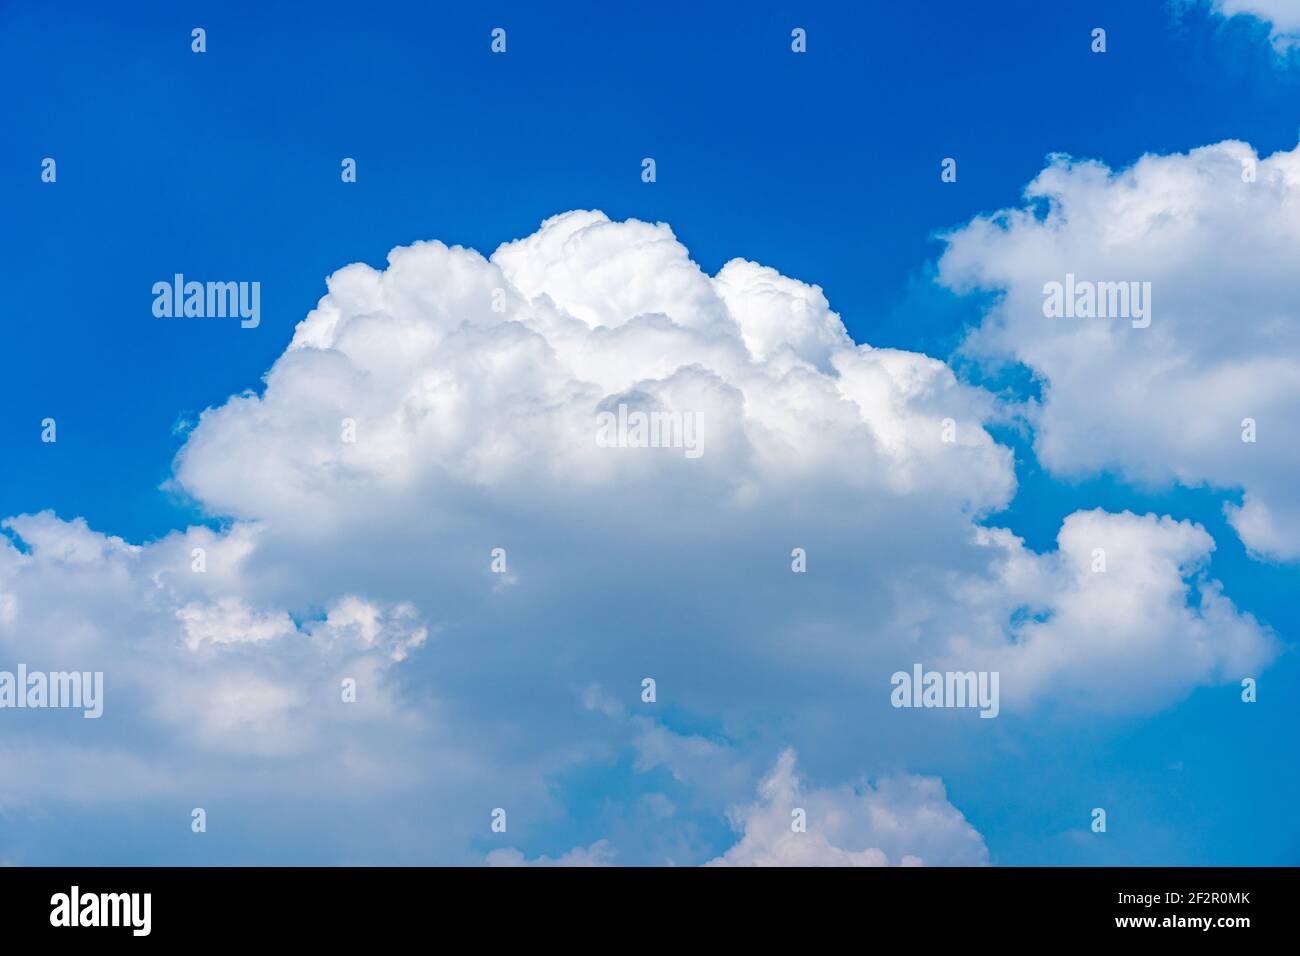 Nuage blanc géant flottant sur fond bleu ciel Banque D'Images